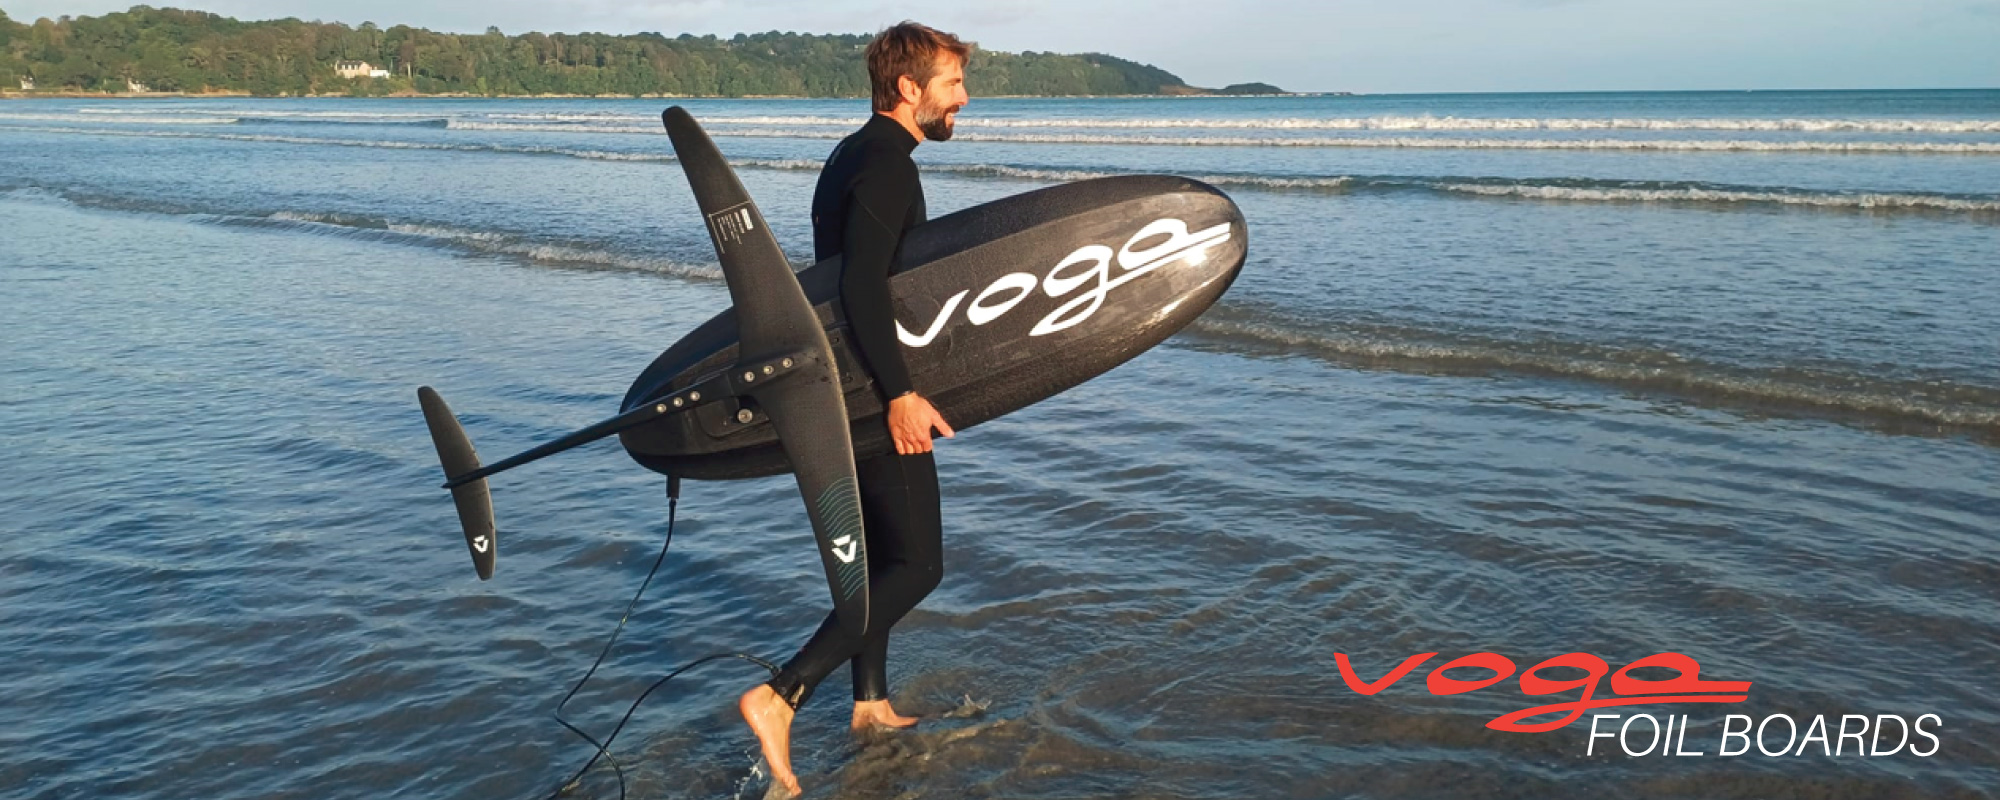 Produit Voga Marine : gamme de planches surf foil